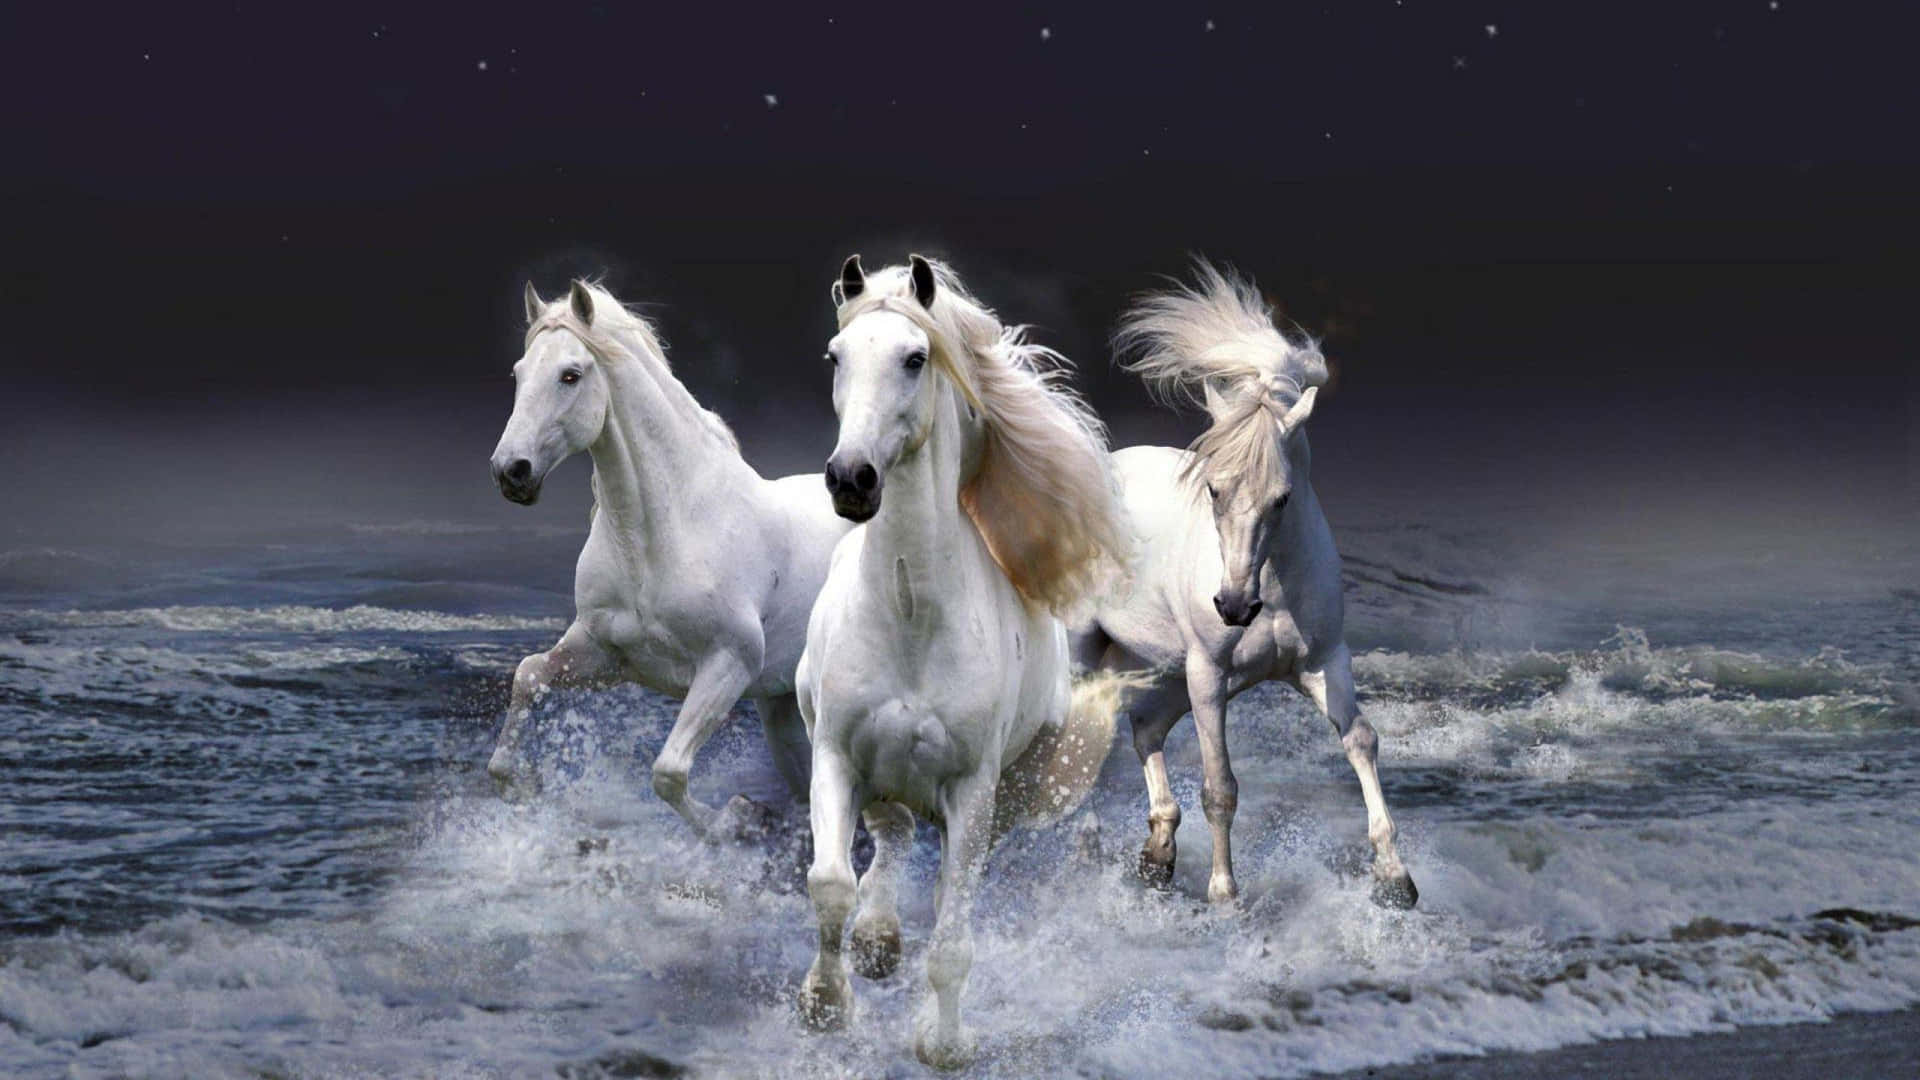 Ilmaestoso Cavallo Bianco Srotola Le Sue Ali.